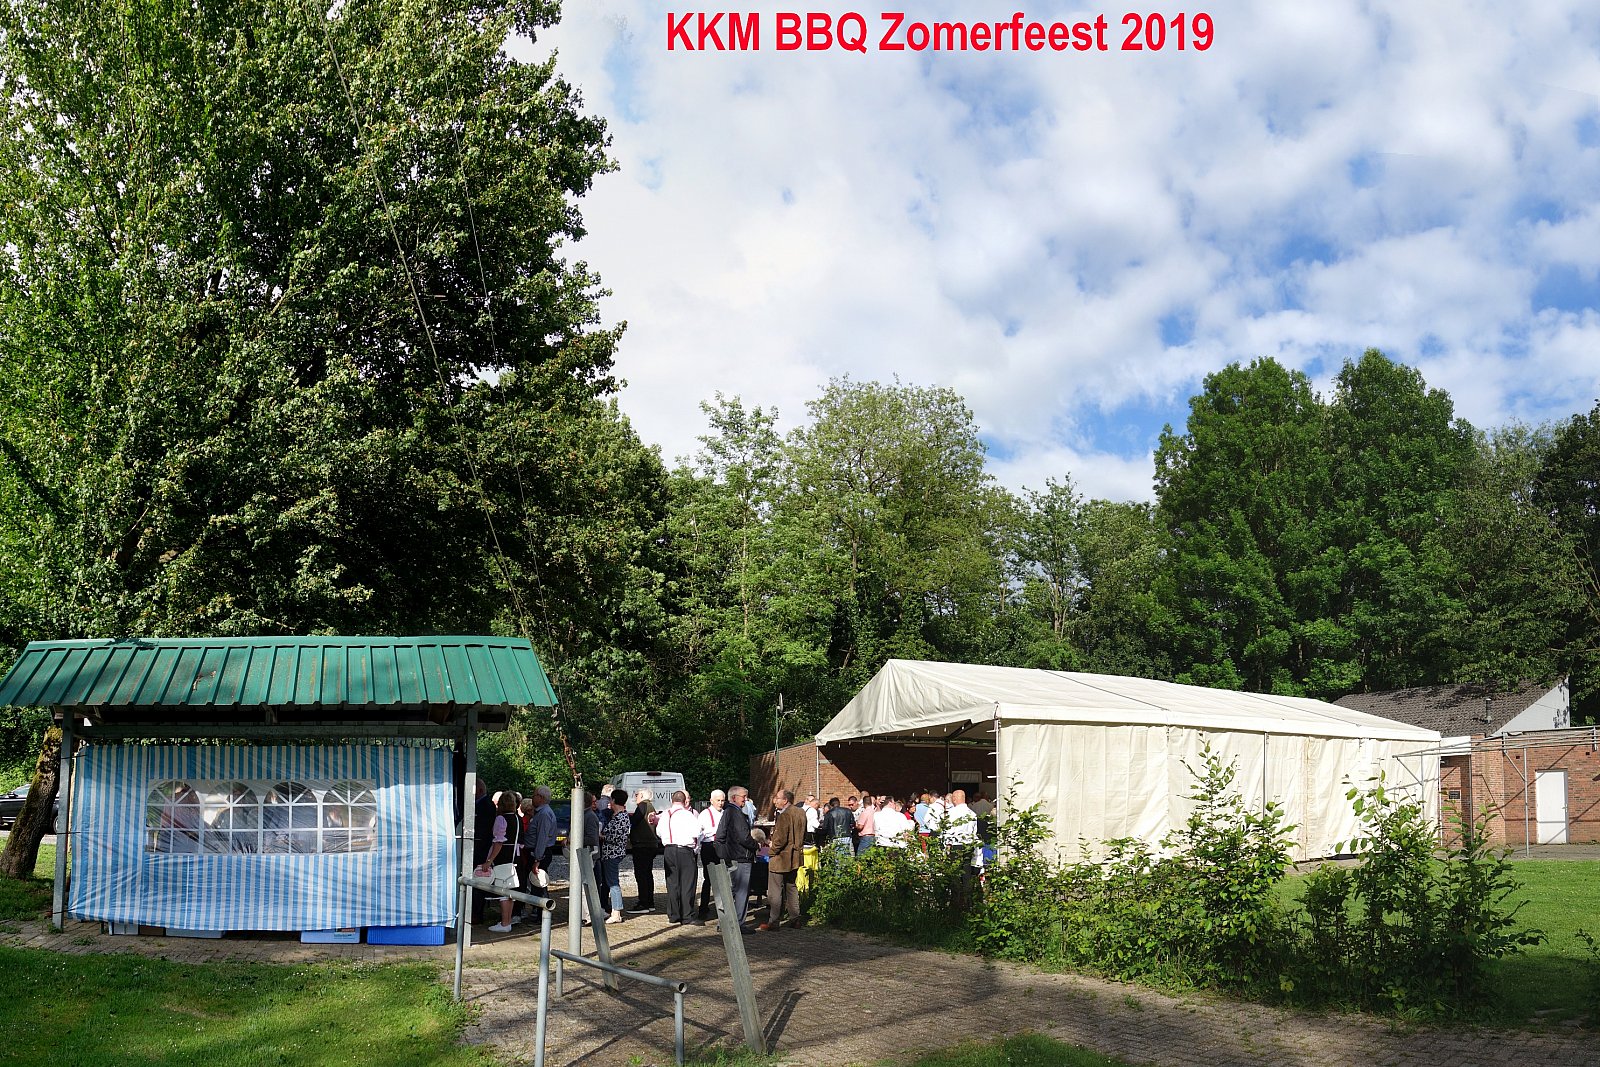 KKM BBQ Zomerfeest 2019